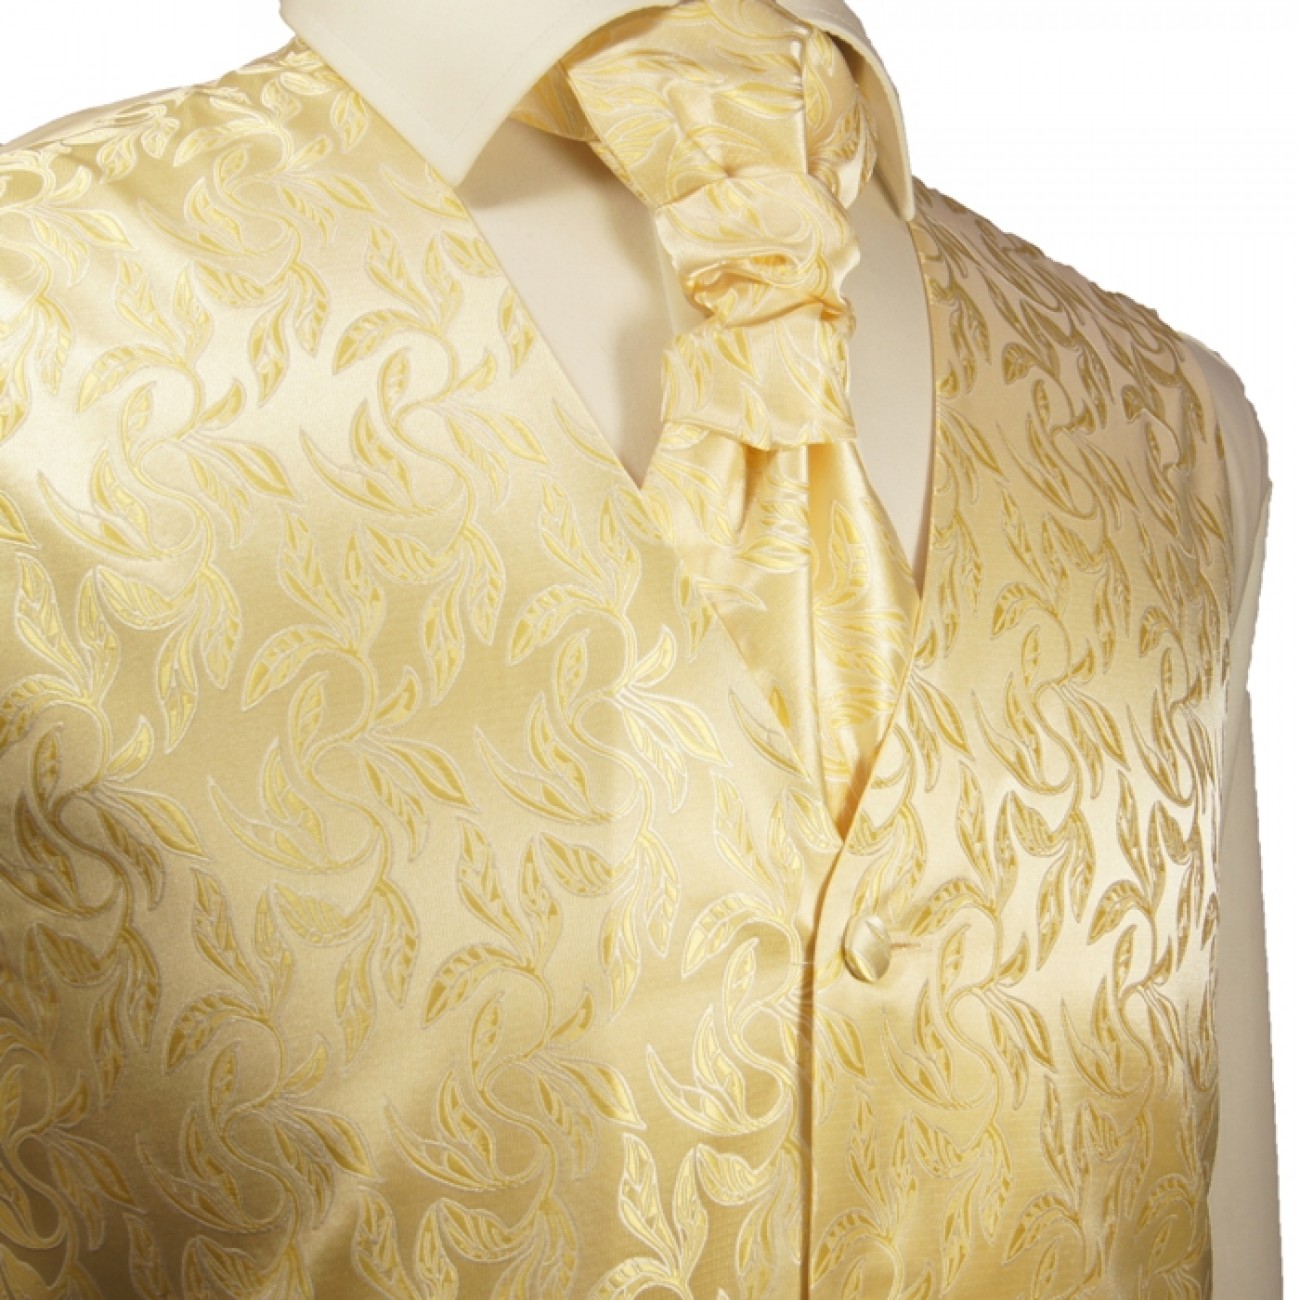 Creme gold Hochzeitsweste mit Plastron Krawatte Einstecktuch und Manschettenknöpfen v15